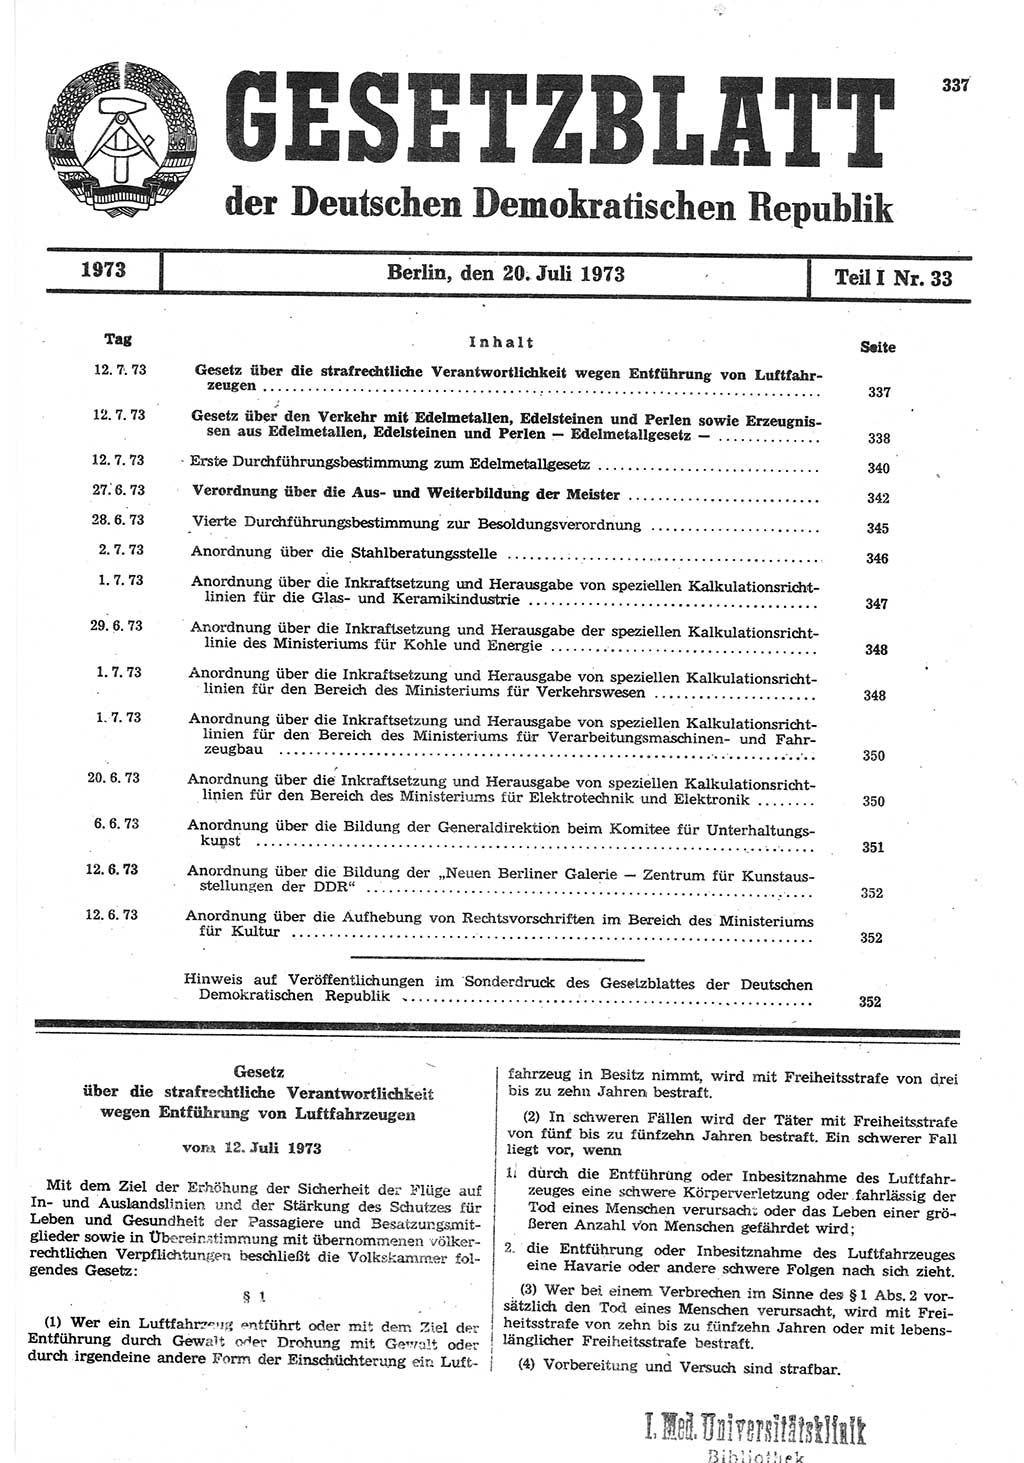 Gesetzblatt (GBl.) der Deutschen Demokratischen Republik (DDR) Teil Ⅰ 1973, Seite 337 (GBl. DDR Ⅰ 1973, S. 337)